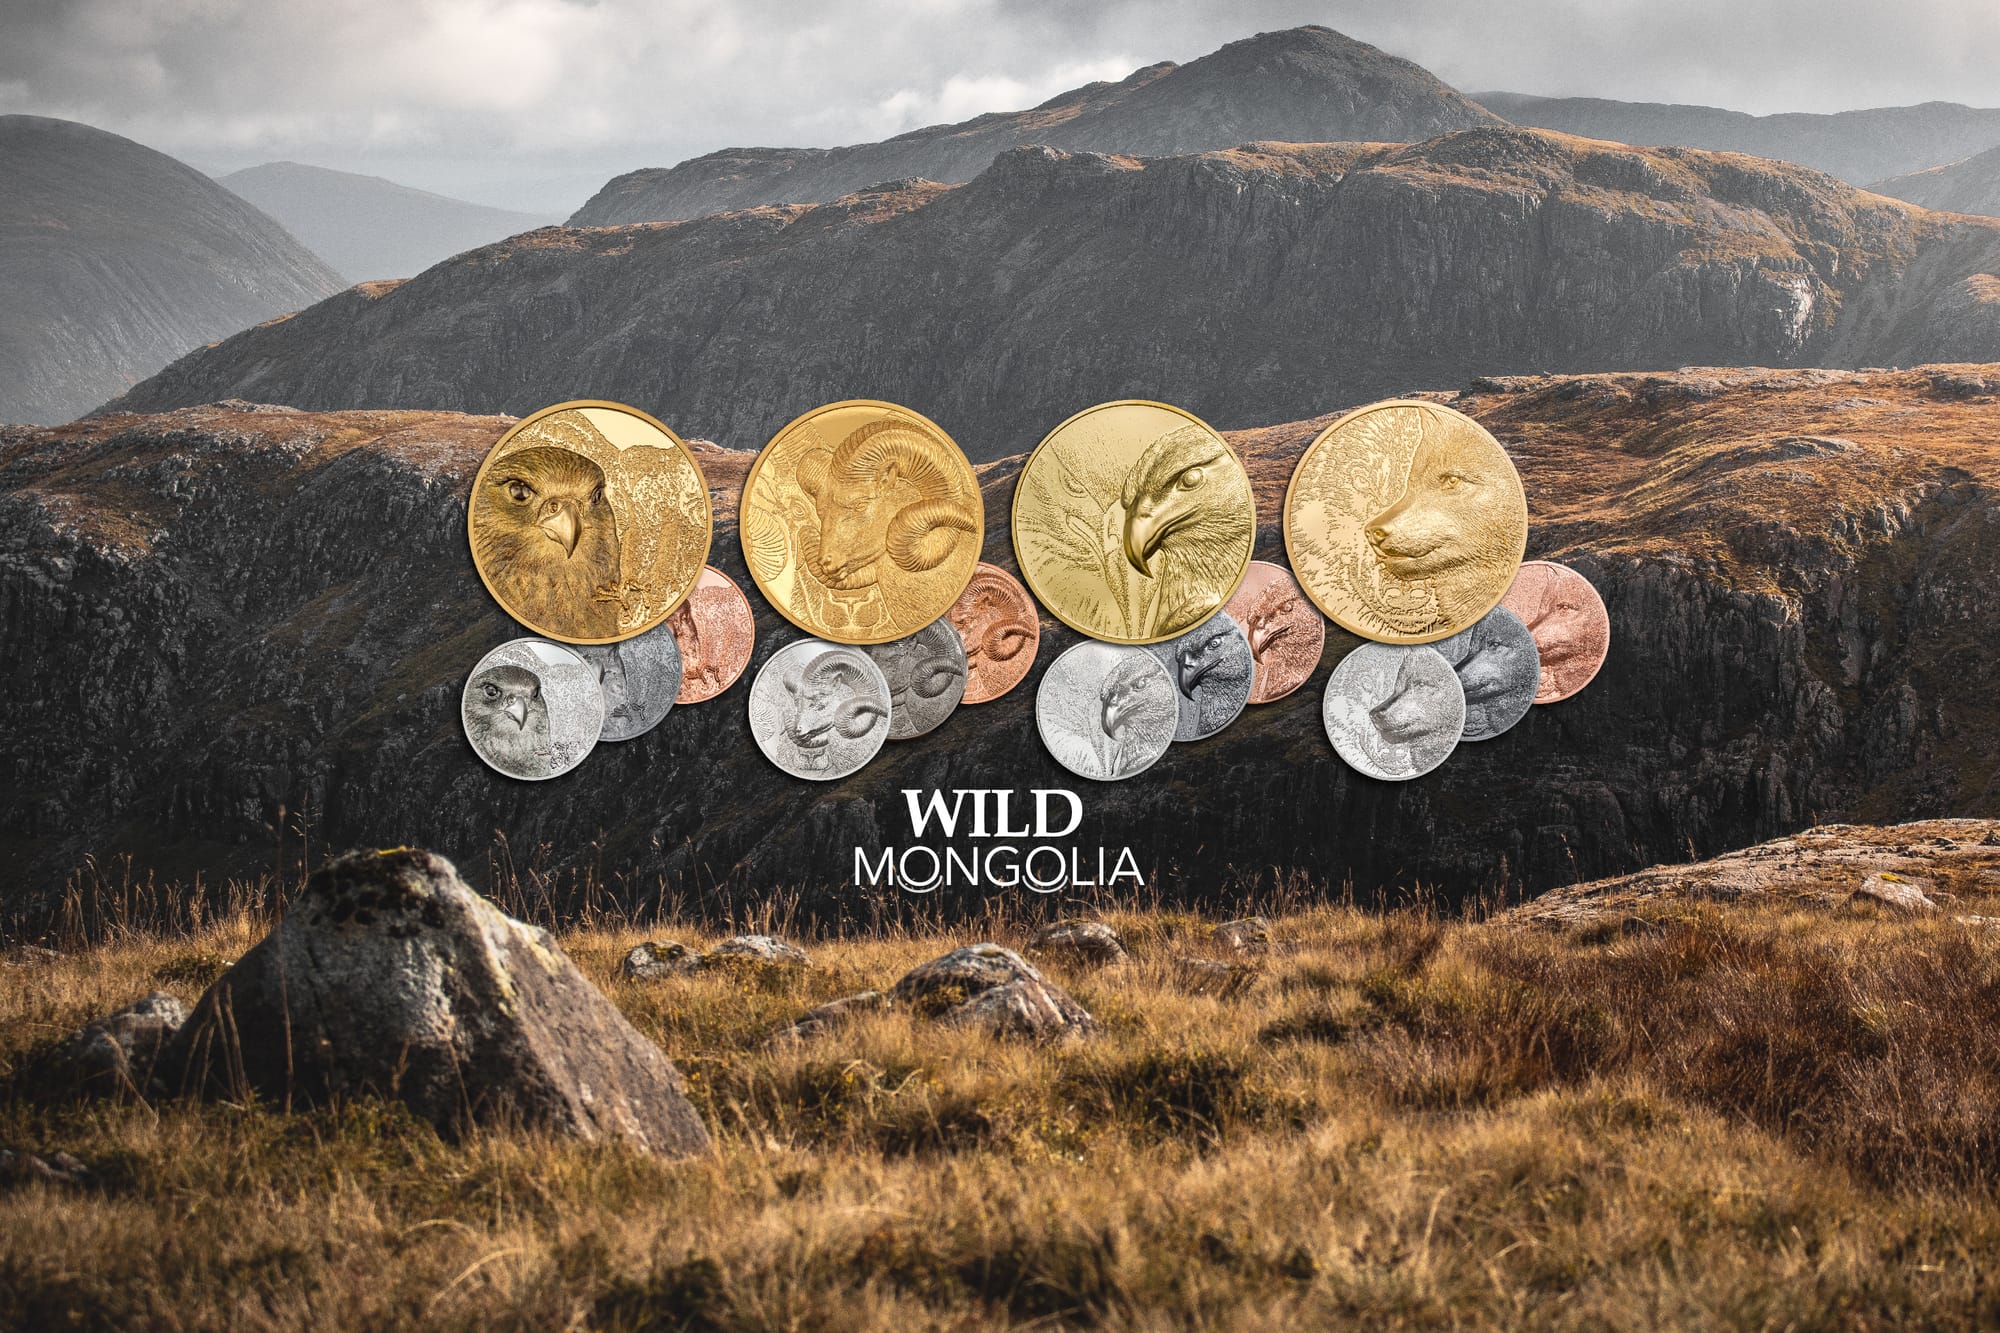 Wild Mongolia Coin Collection